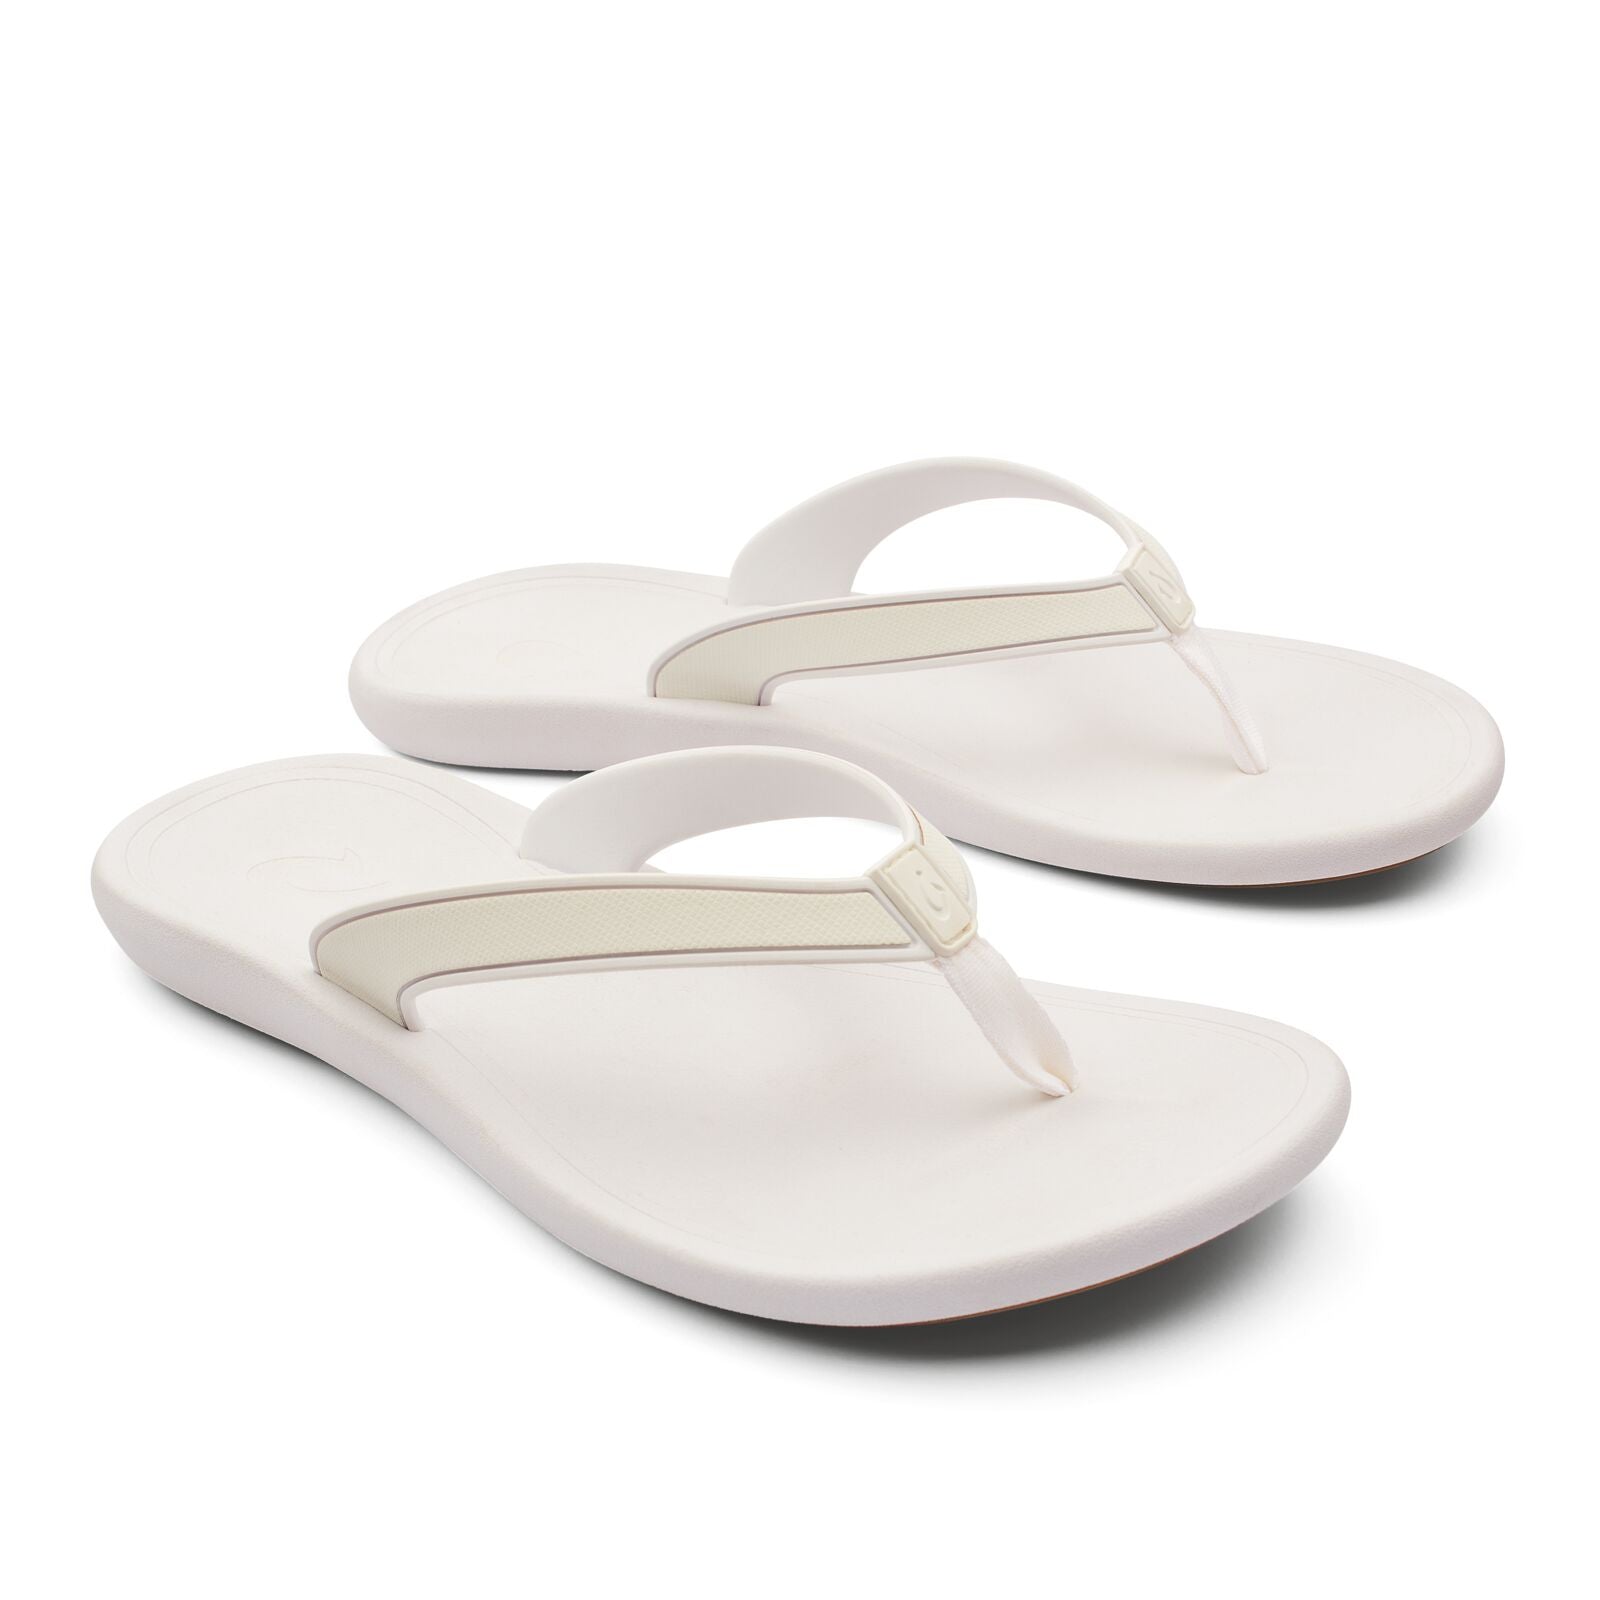 Olukai Kapehe Womens Sandal 4R4R-White-White 7